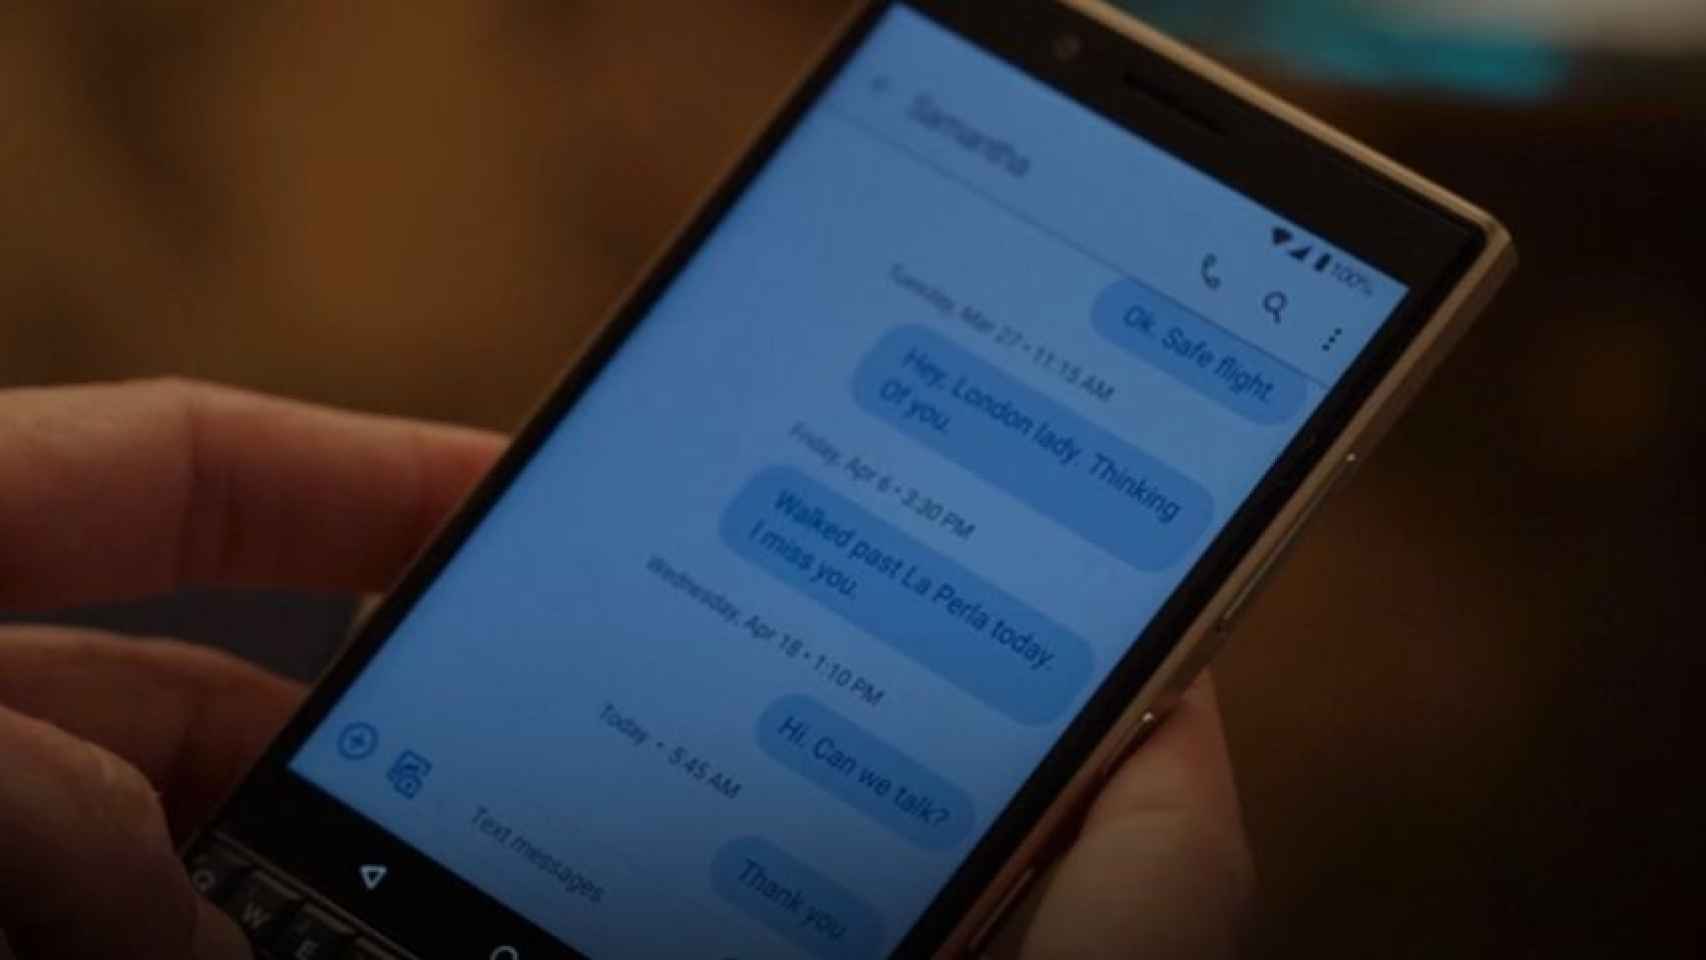 La relación de Samantha y Carrie, resumida por unos mensajes de texto.